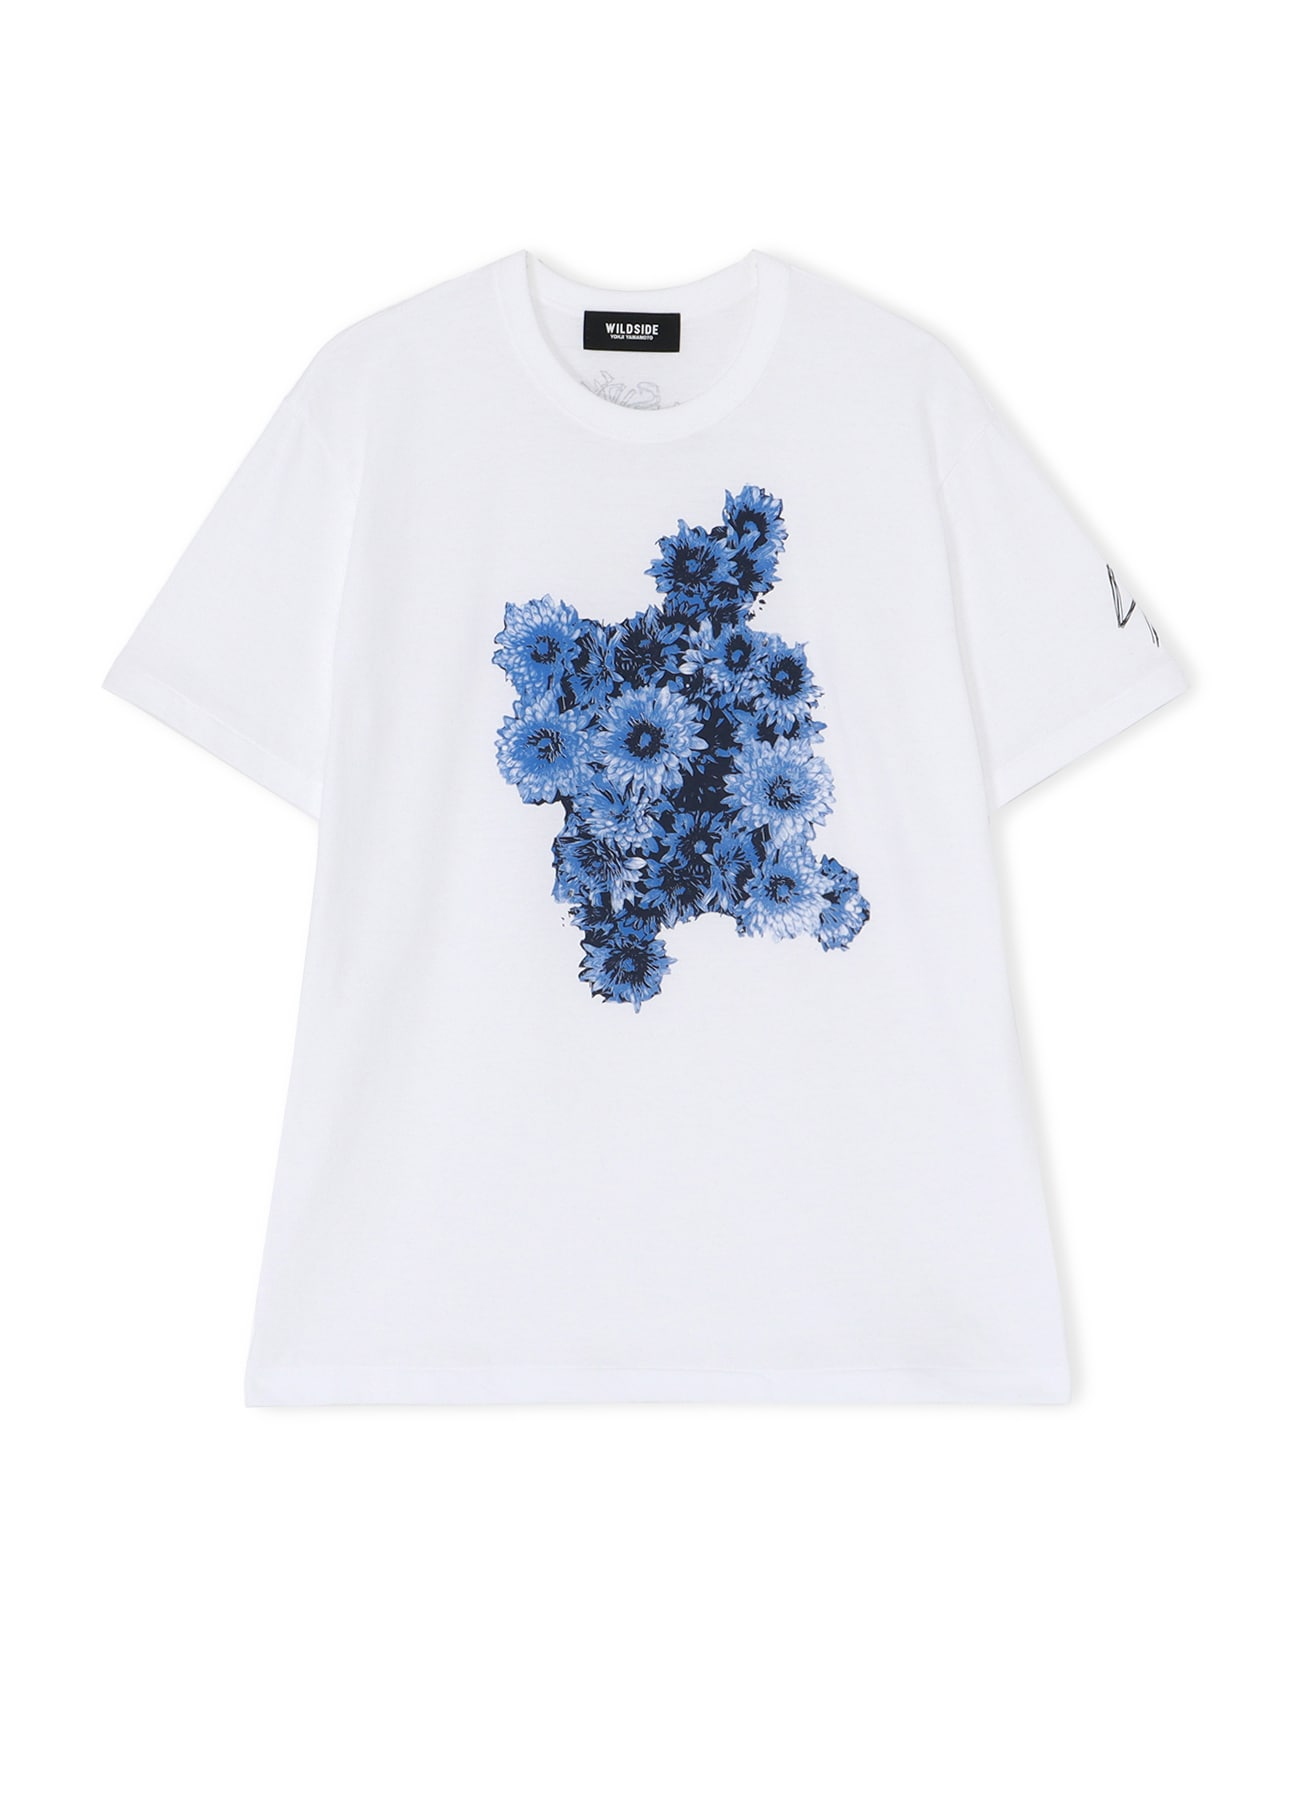 Y's Yohji yamamoto フラワープリントTシャツメンズ - Tシャツ